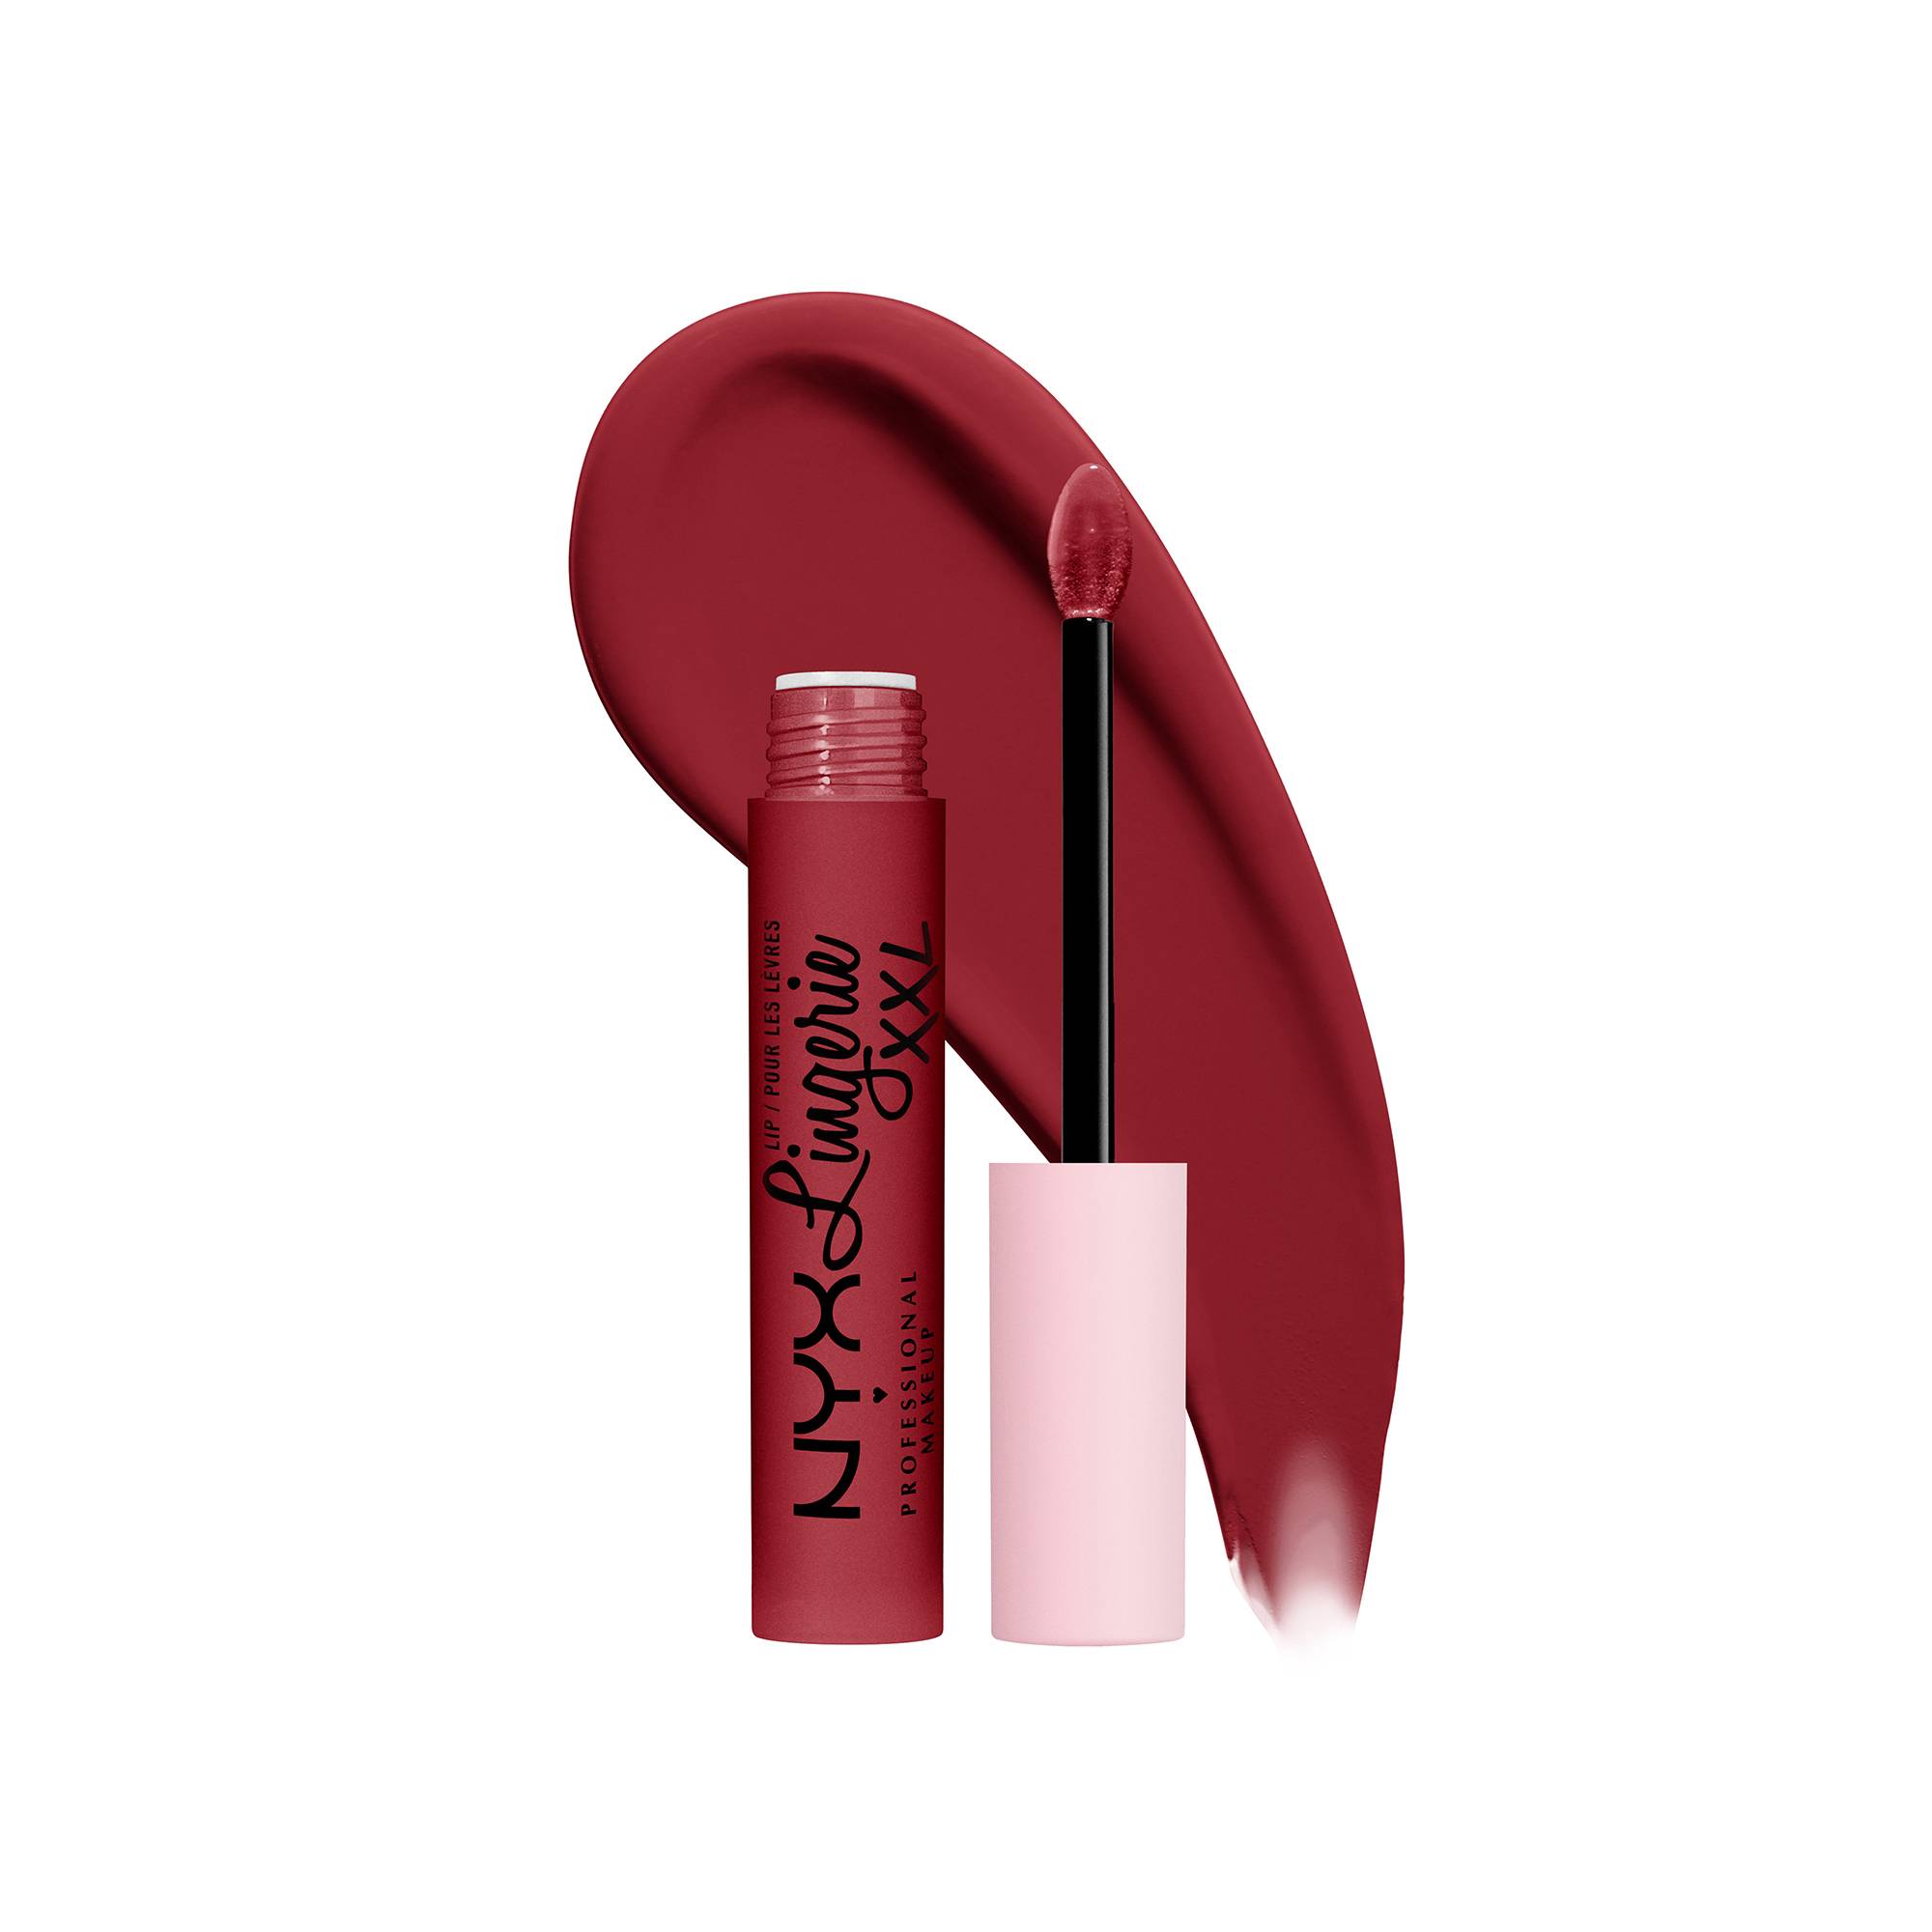 Rouge à lèvres lip lingerie XXL - It's hotter de la marque NYX Professional Makeup - 2